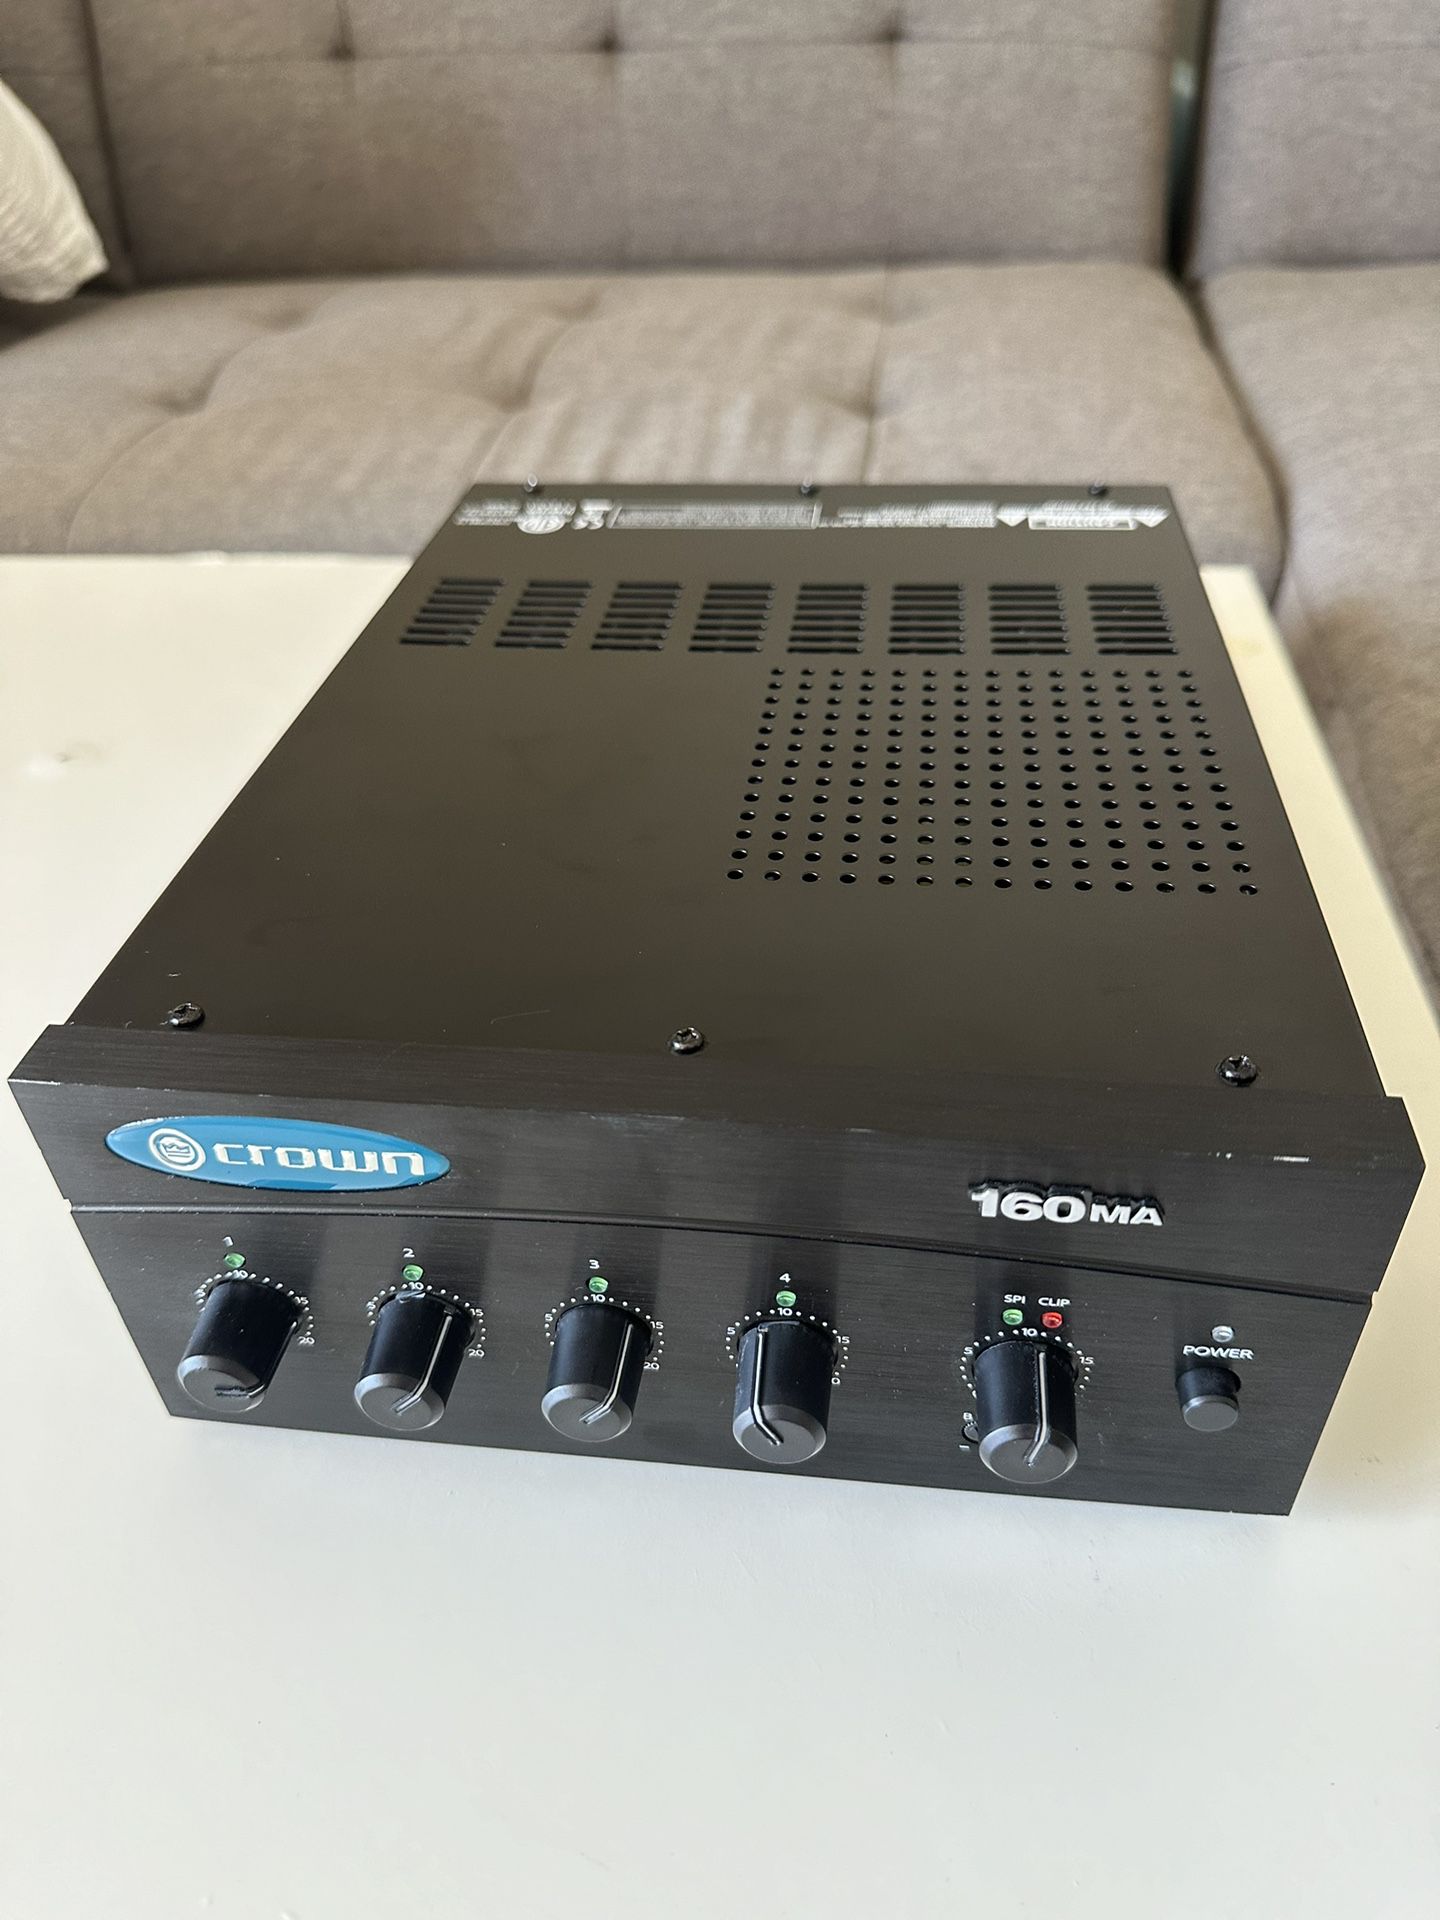 Crown 160 MA Amplifier